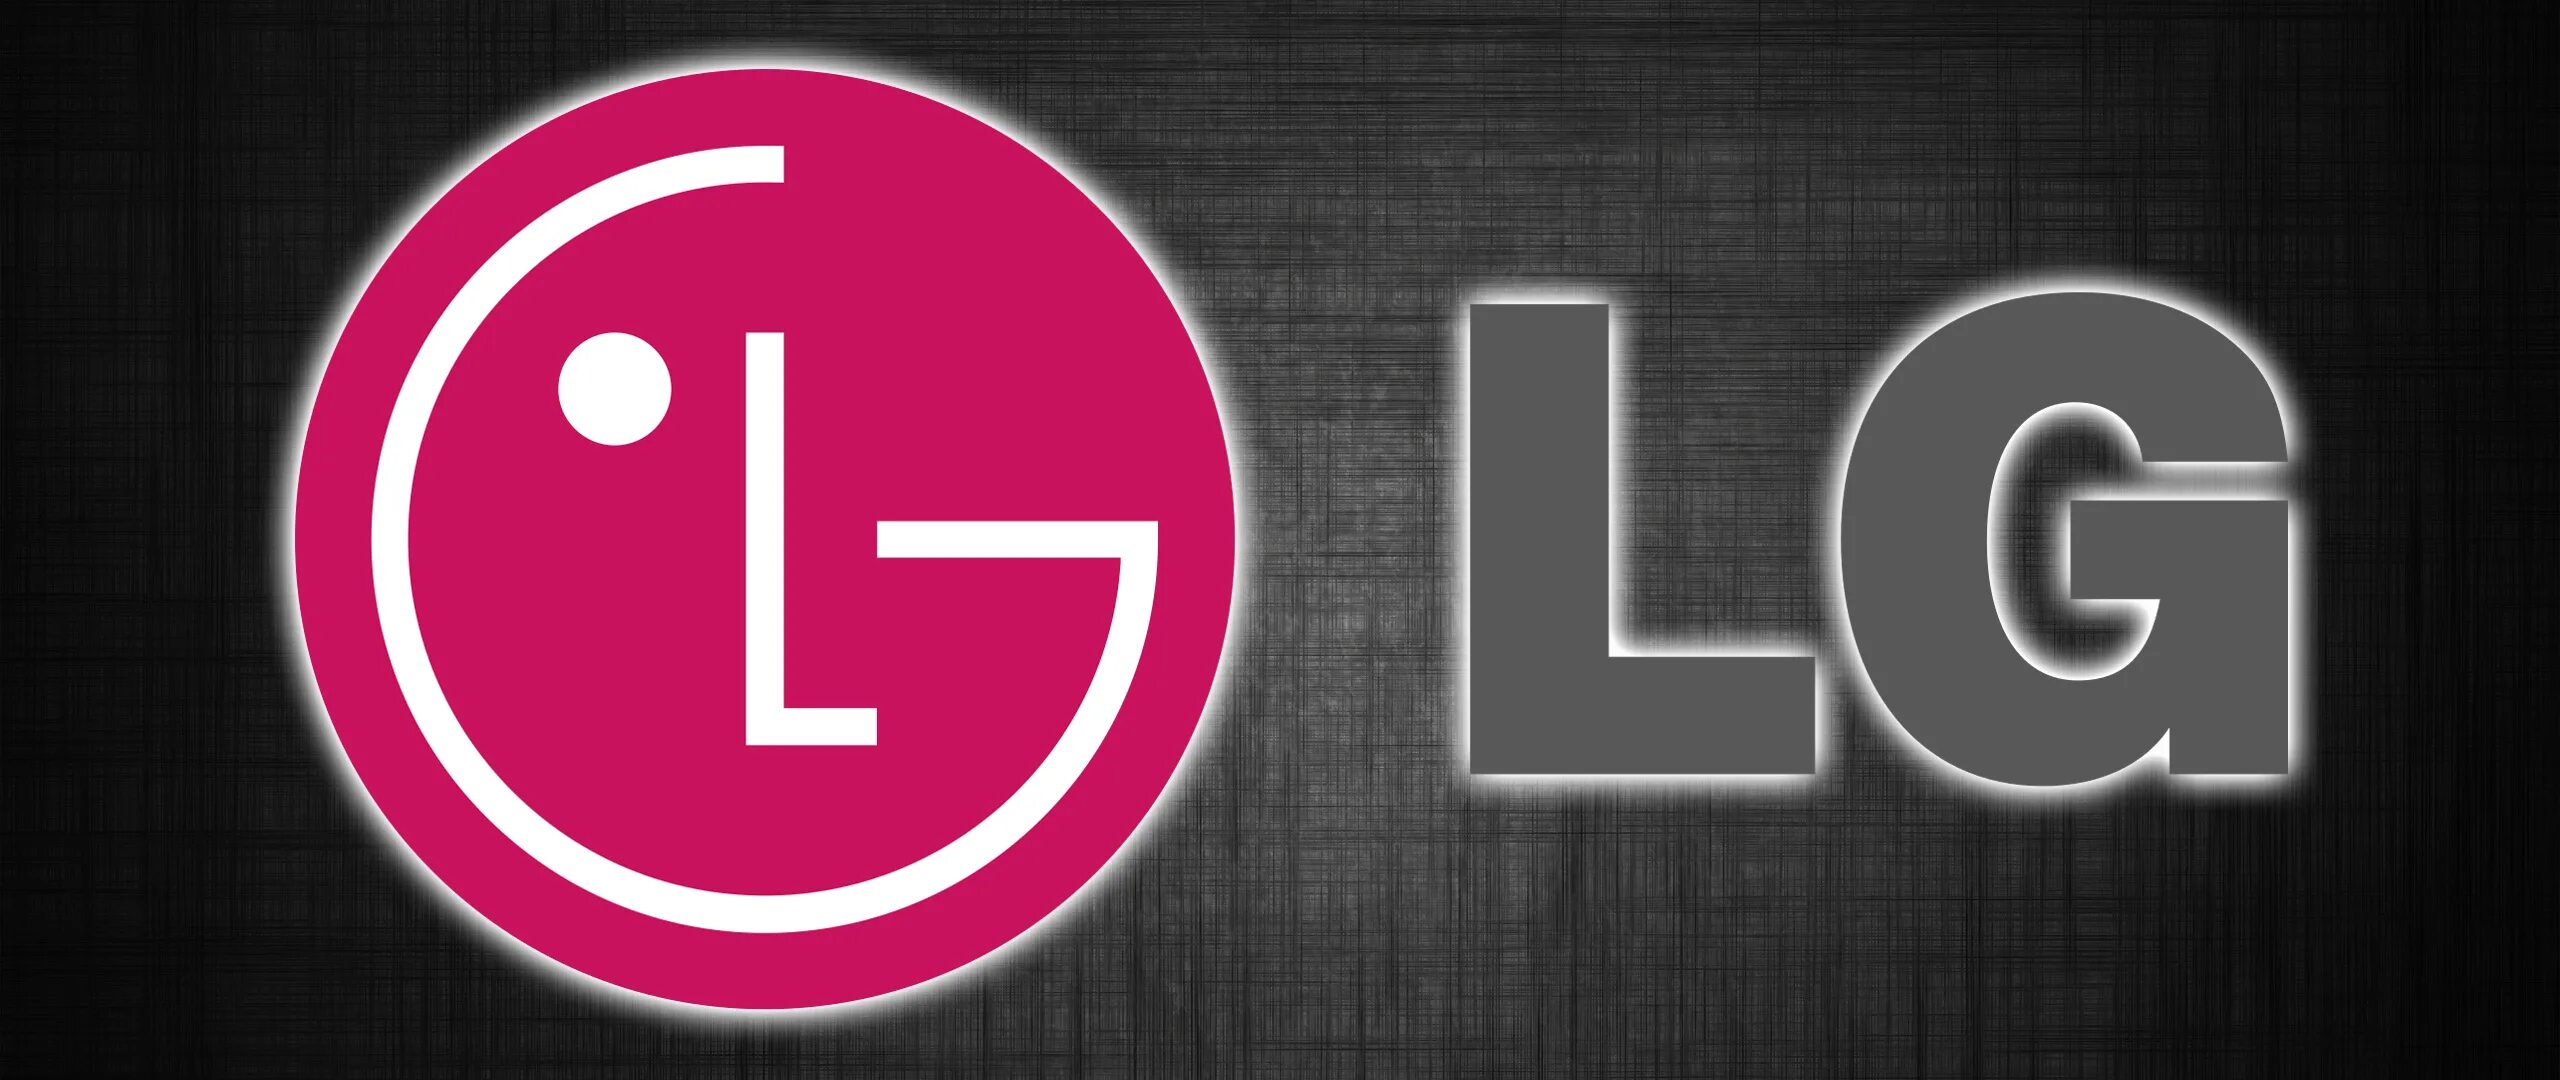 LG logo 2014. Первый логотип LG. ТВ В LG логотип. Красивый логотип LG. Lg телевизоры логотип